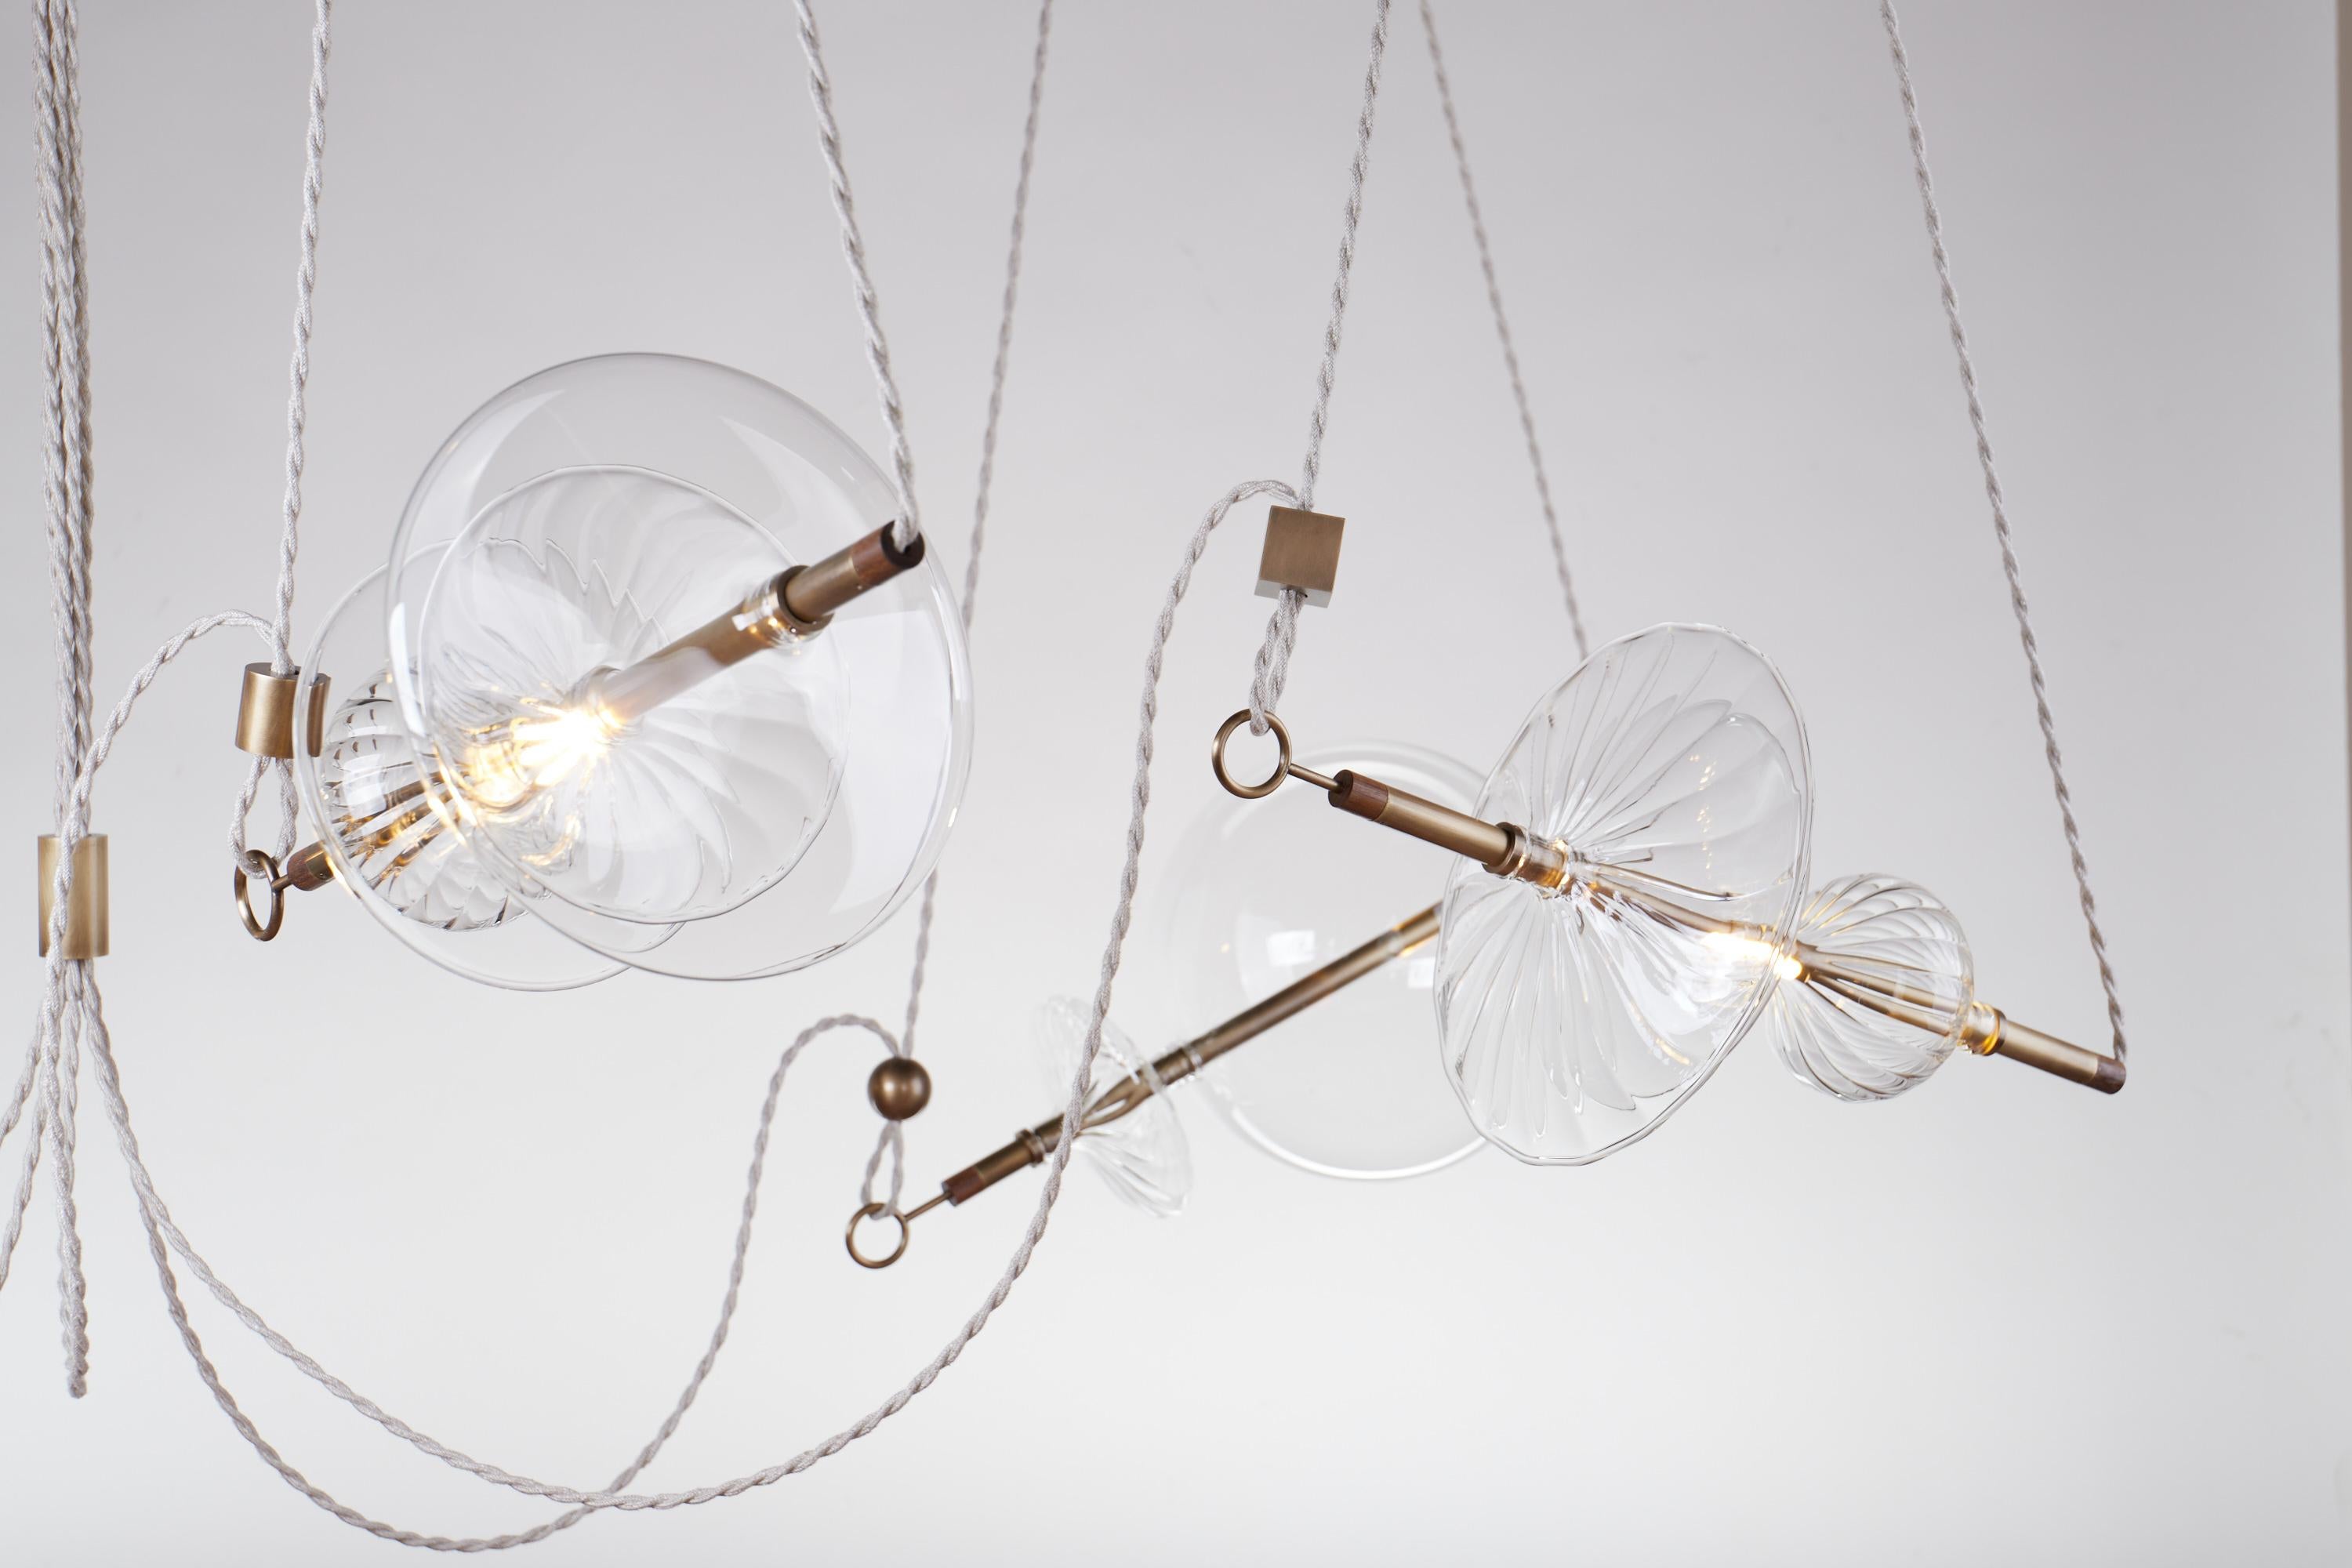 Le lustre contemporain Trapezi s'inspire de l'idée d'un trapéziste de cirque.

Le verre soufflé à la main dans une variété de formes est combiné avec des barres de laiton et suspendu par des Corde de lin à des unités de moyeu au plafond.

La